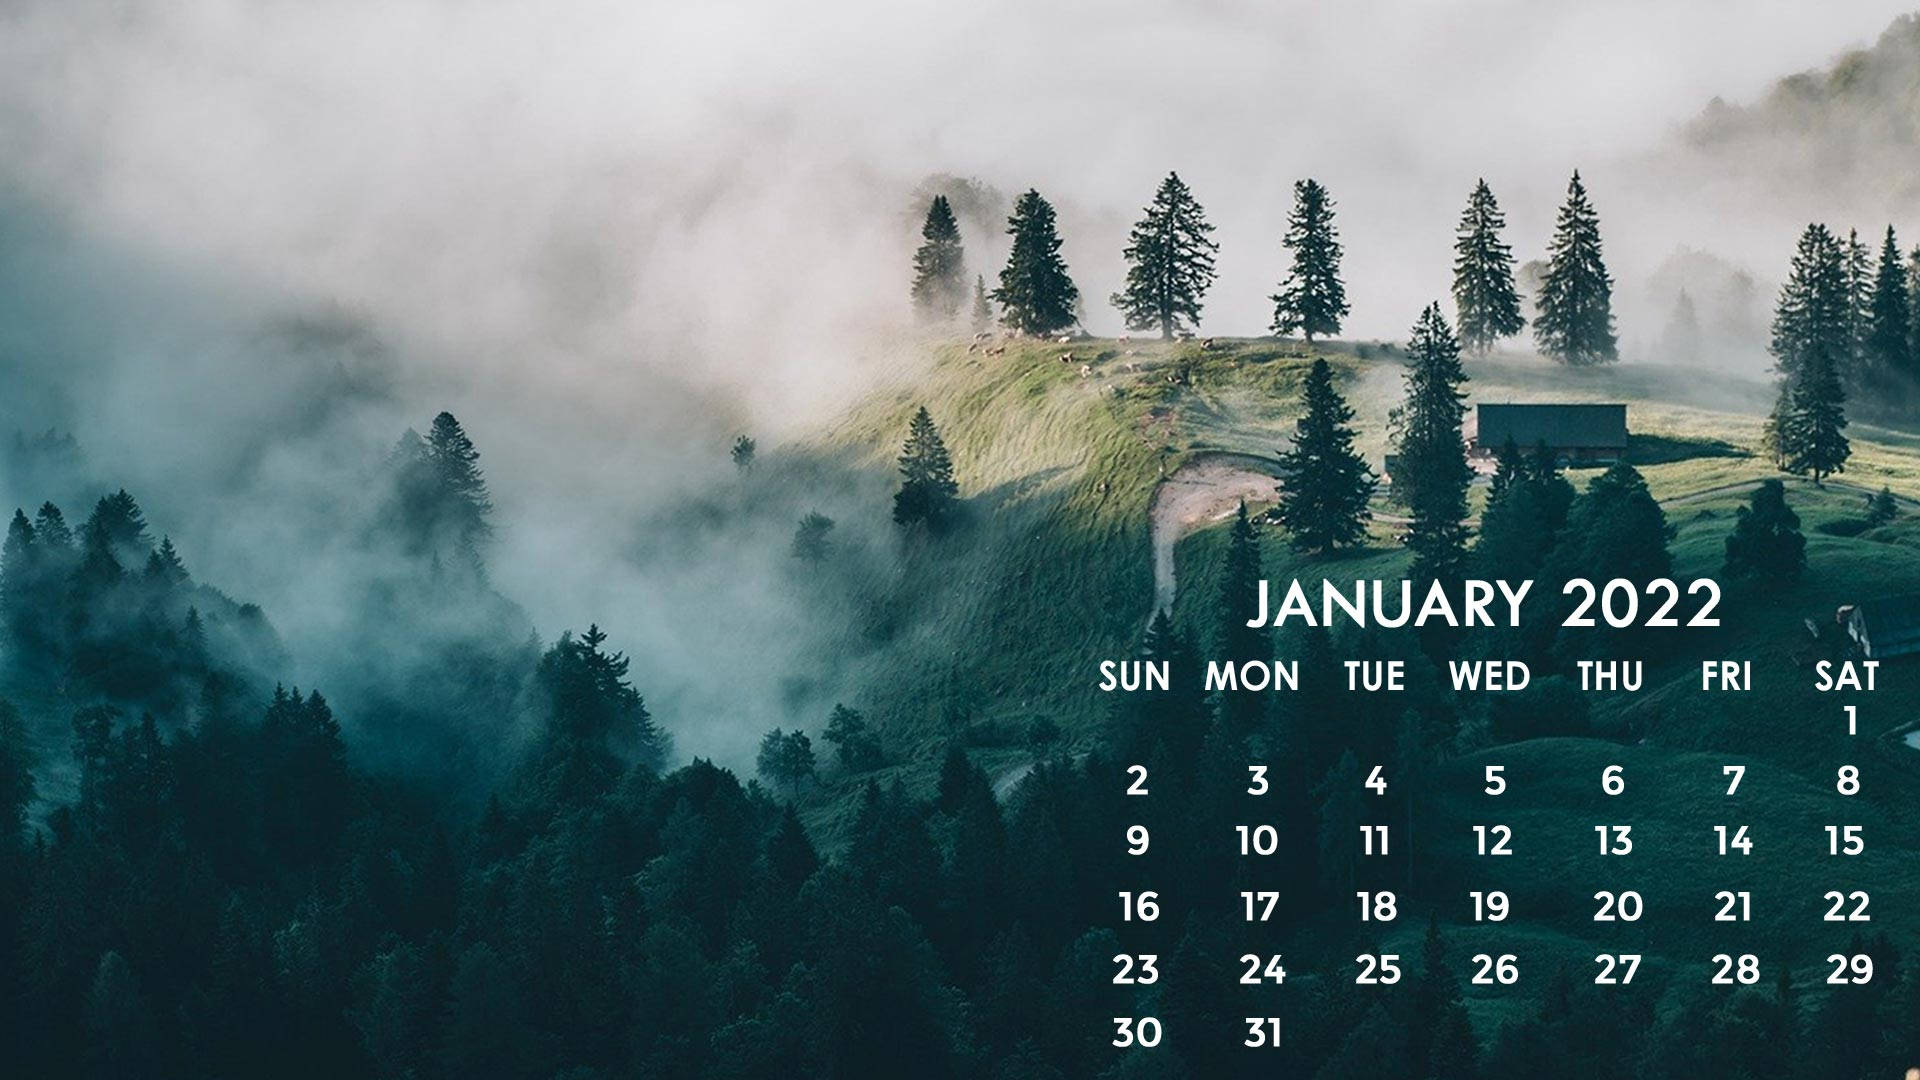 Foggy Mountain Top January 2022 Calendar